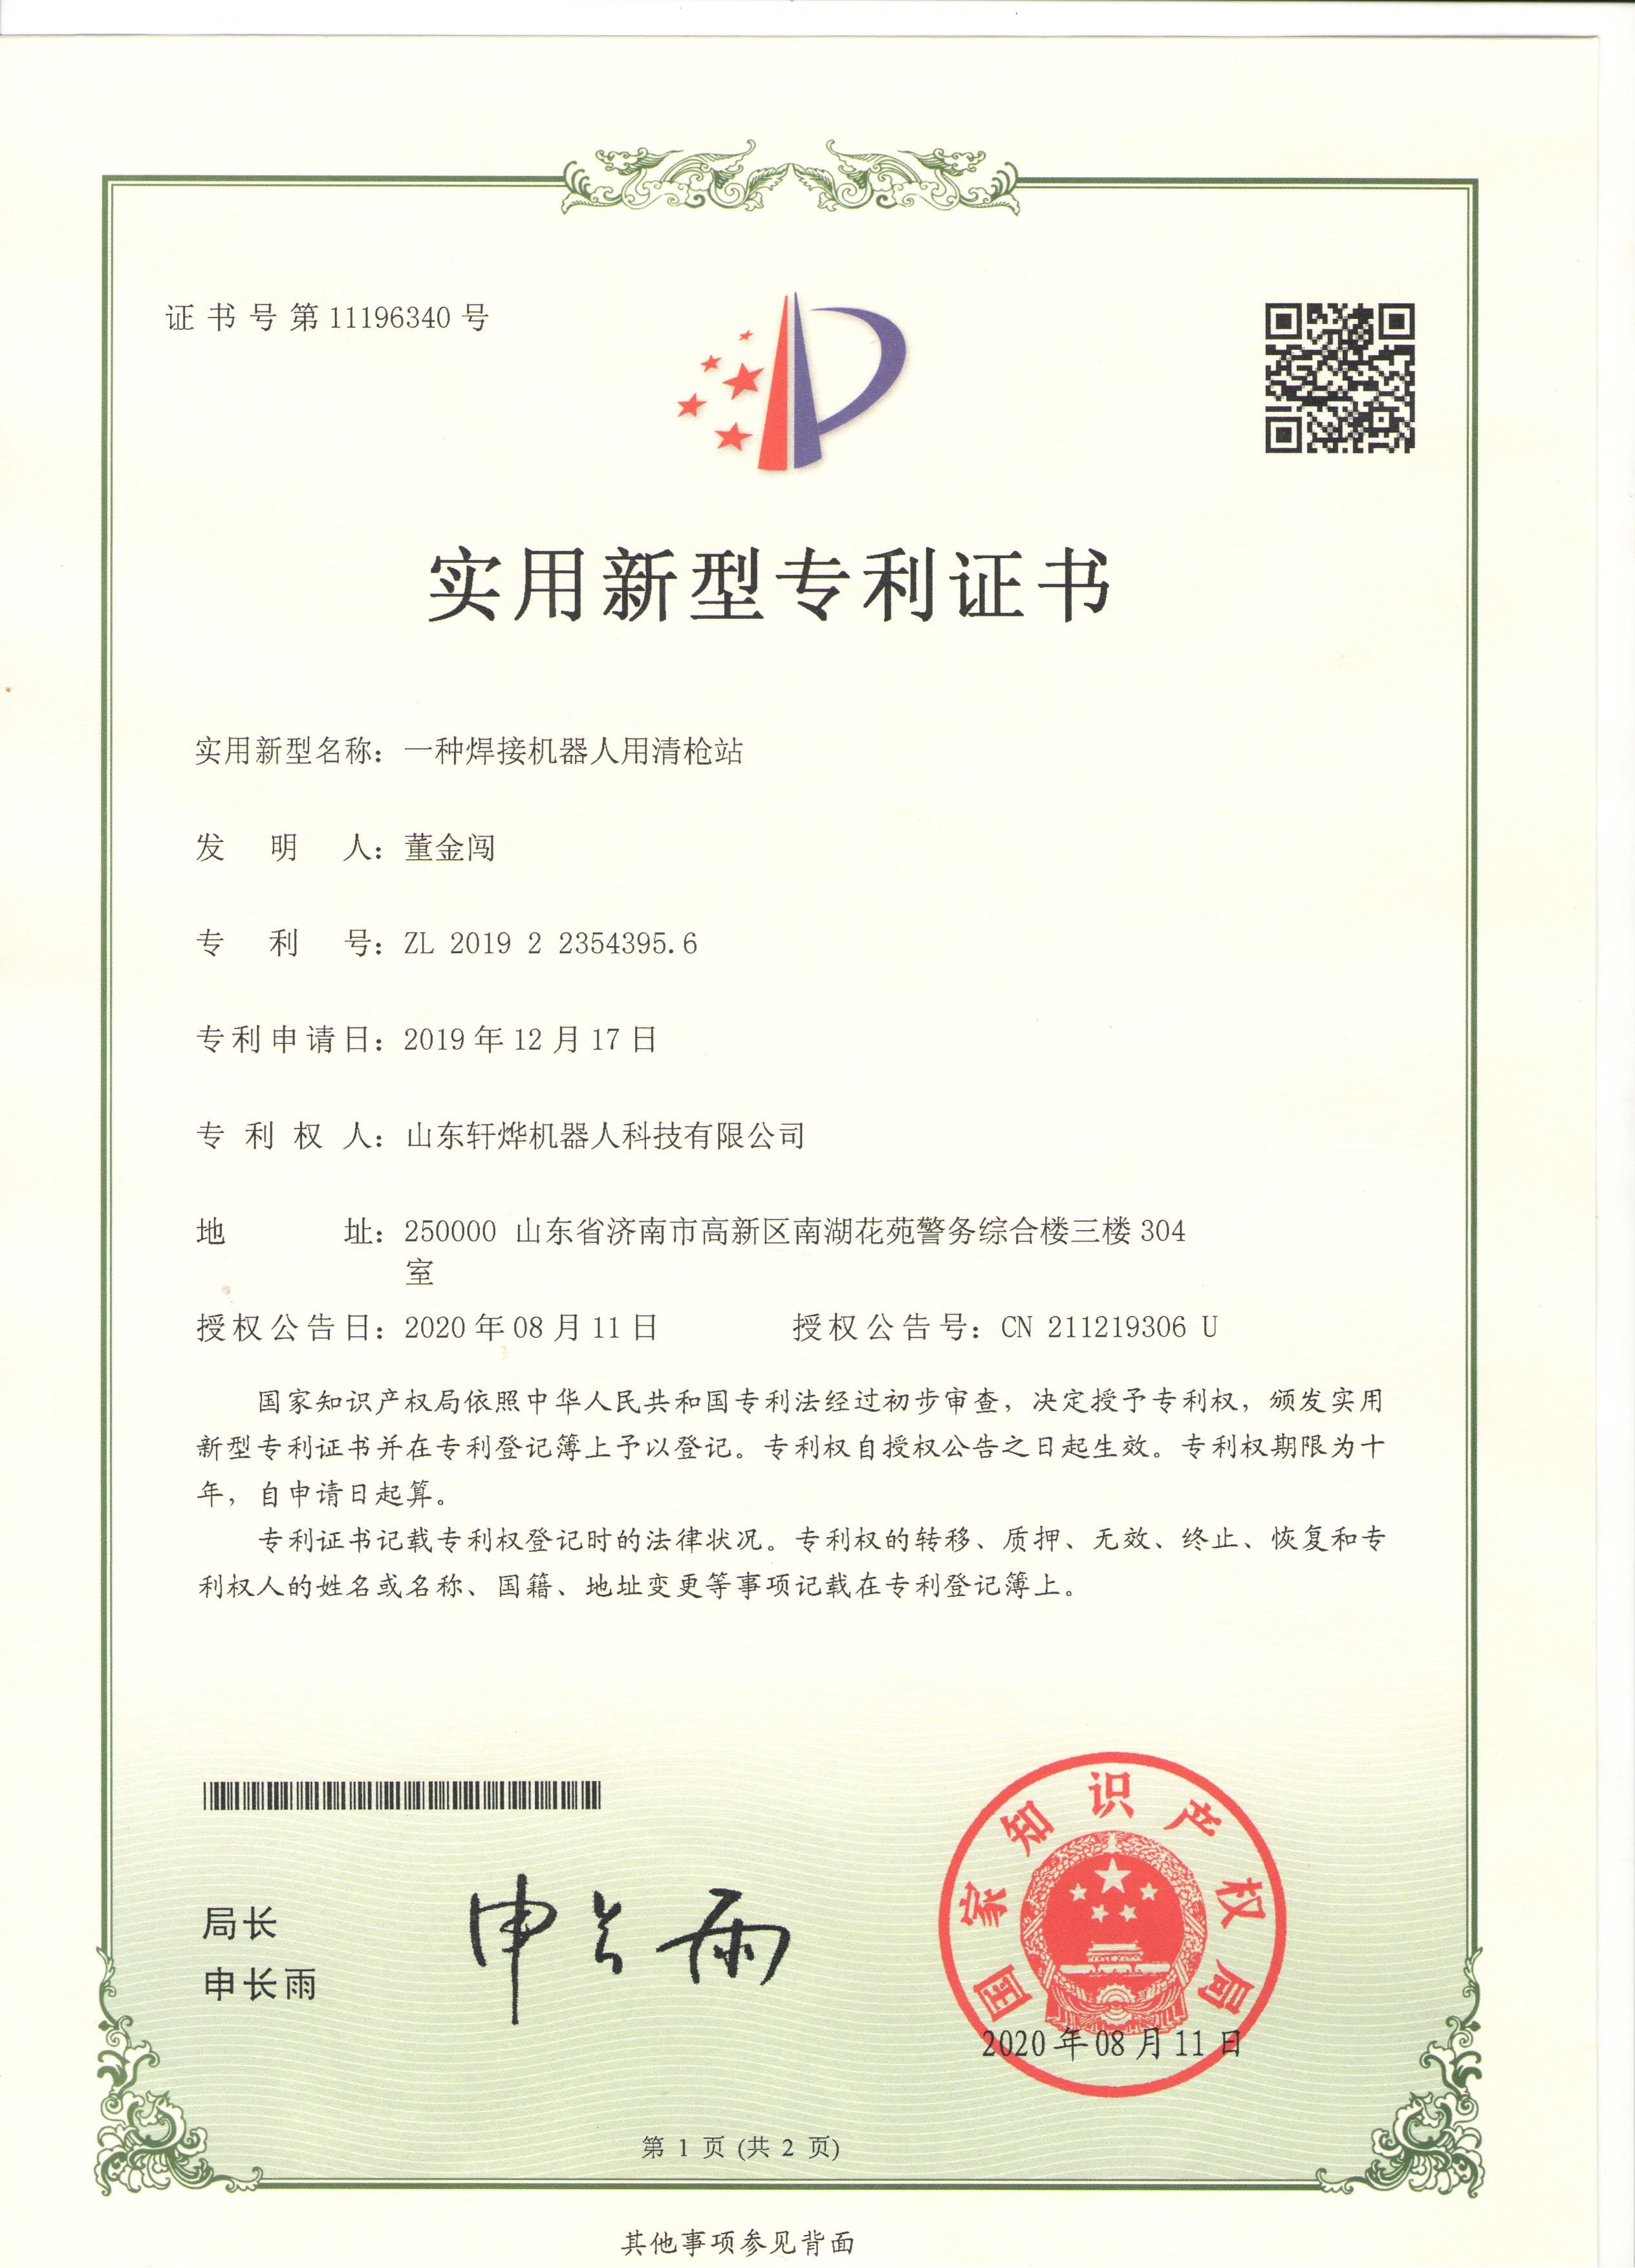 Schweißschema für eingebettete Platten und Hülsen von Dezhou (18)